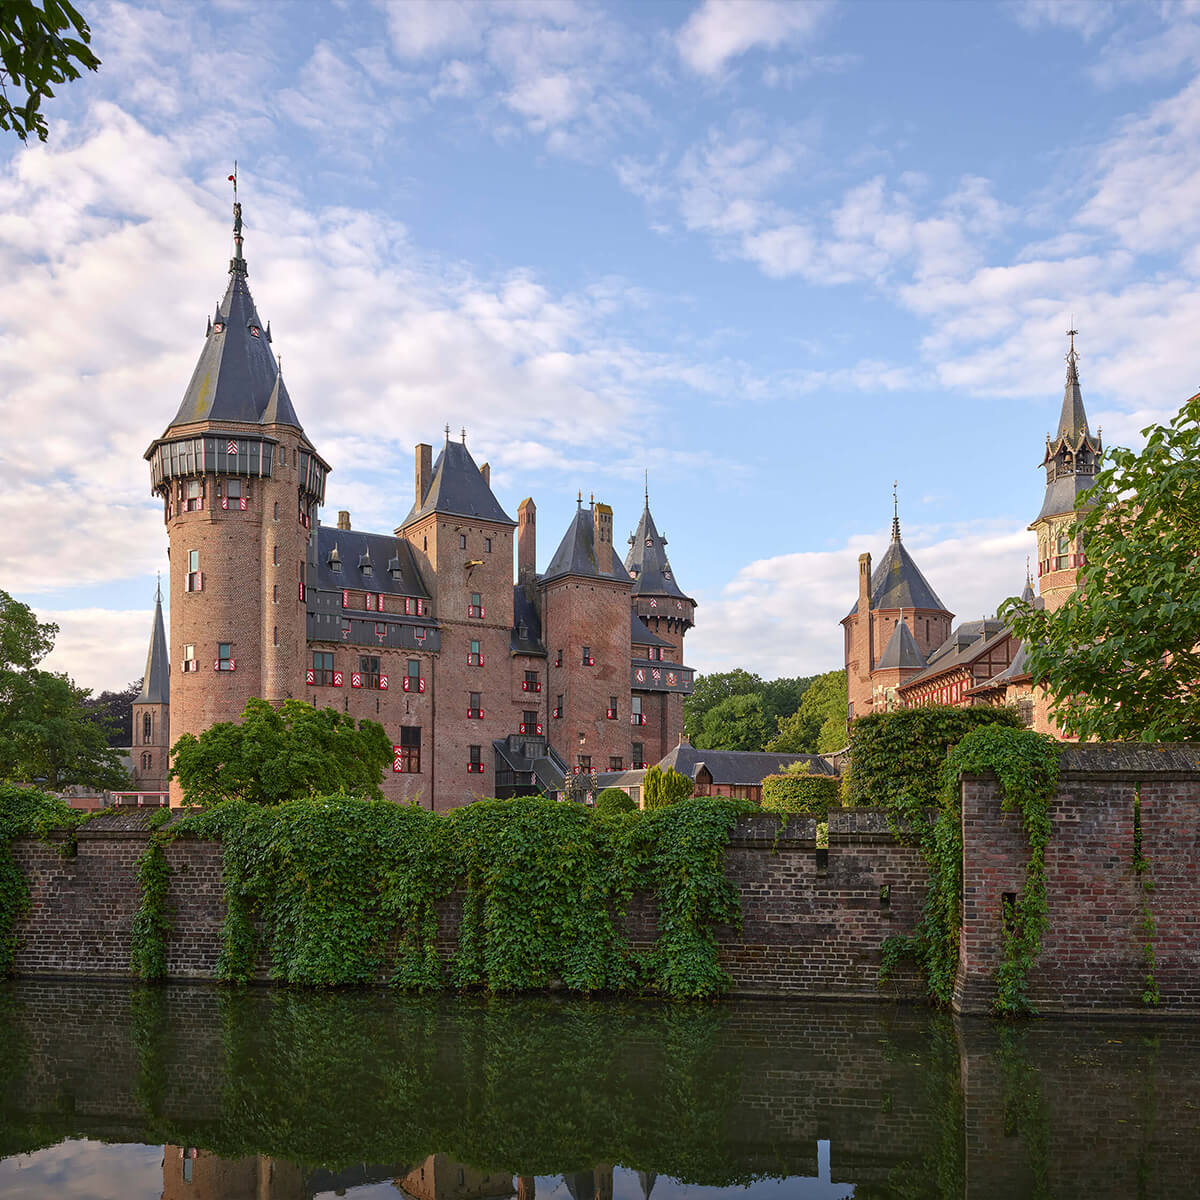 Castle de Haar from the water